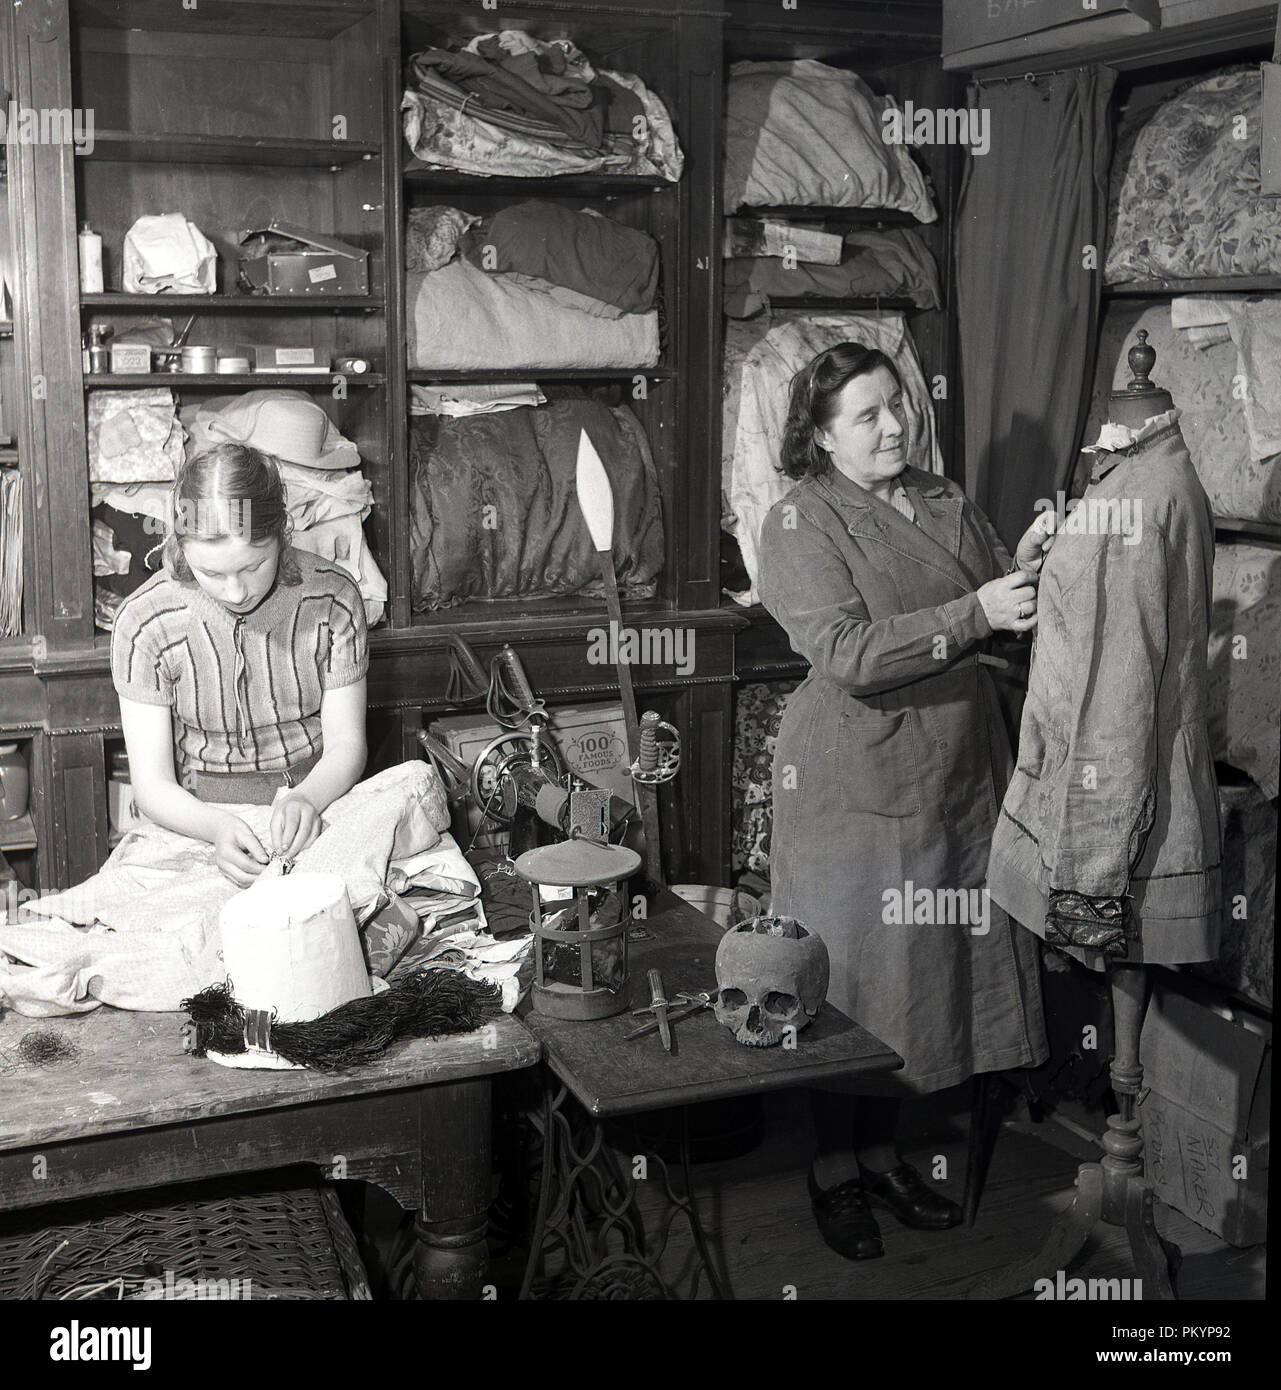 1950, historische, eine Dame und eine junge Frau in einem Kostüm store Vorbereitung Zeitraum Kleid und theatralische Outfits und Requisiten, England, UK. Stockfoto